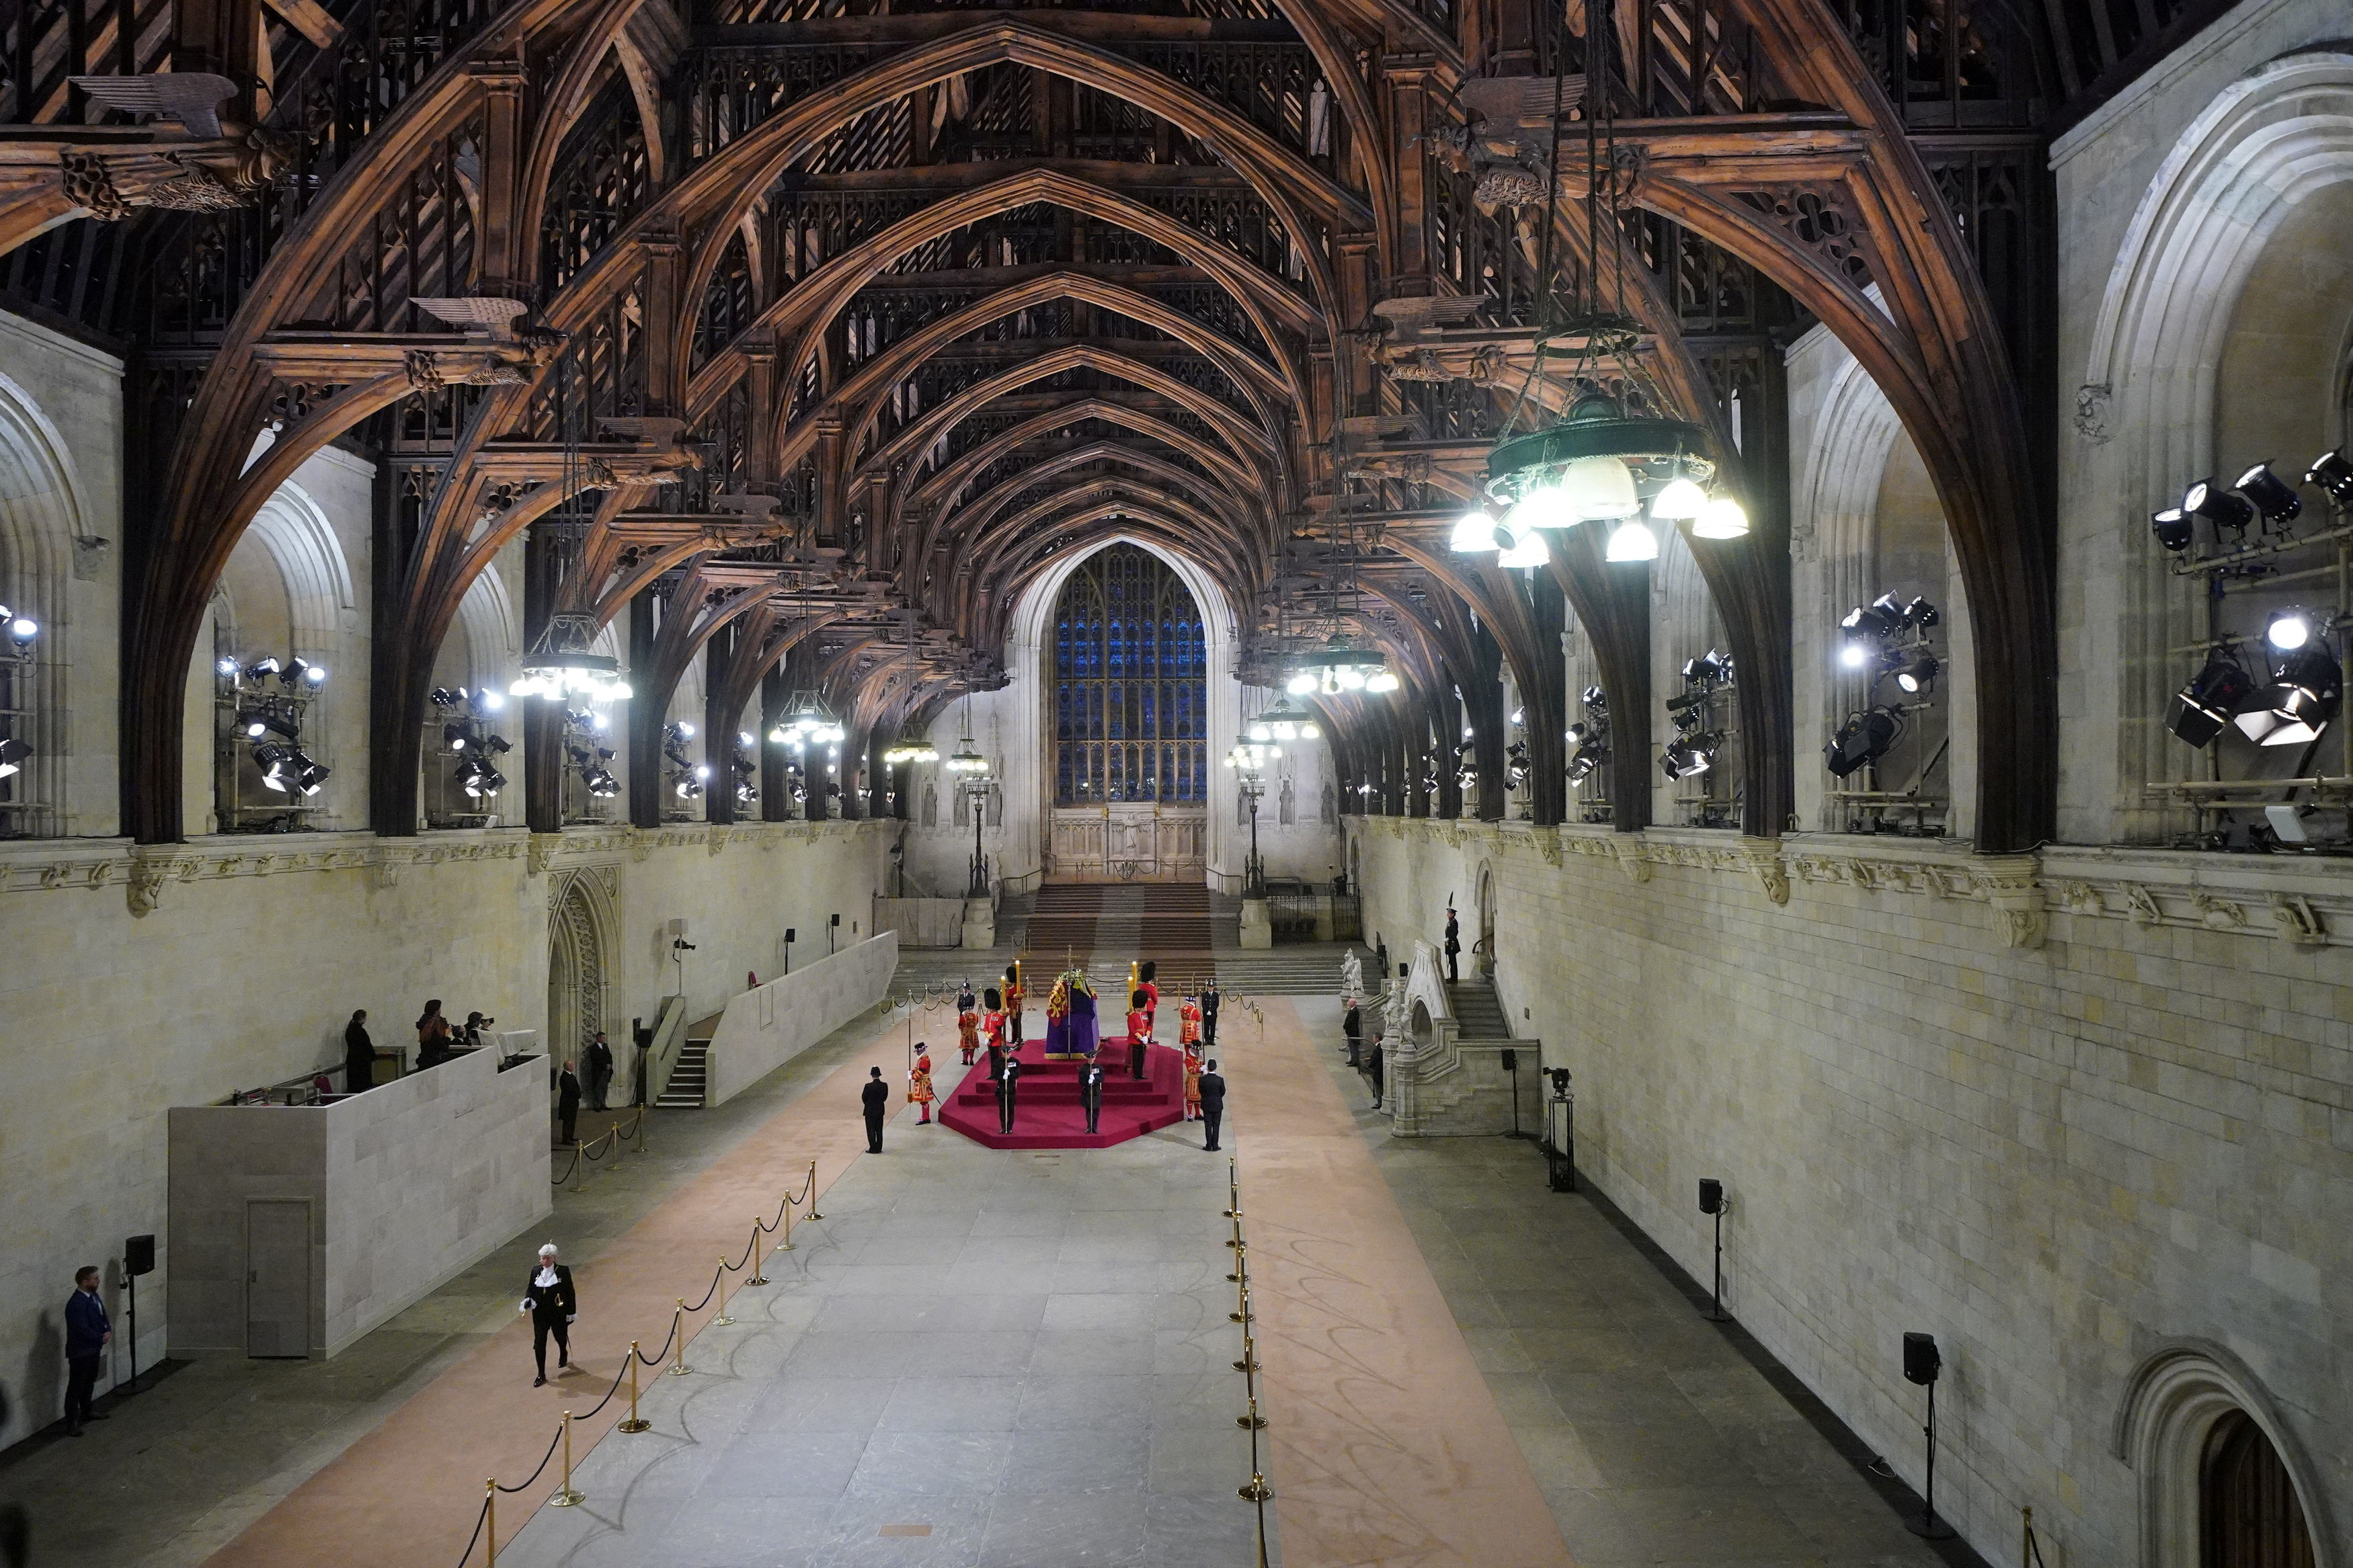 Cerraron la capilla ardiente en el palacio de Westminster para comenzar los preparativos del funeral de estado